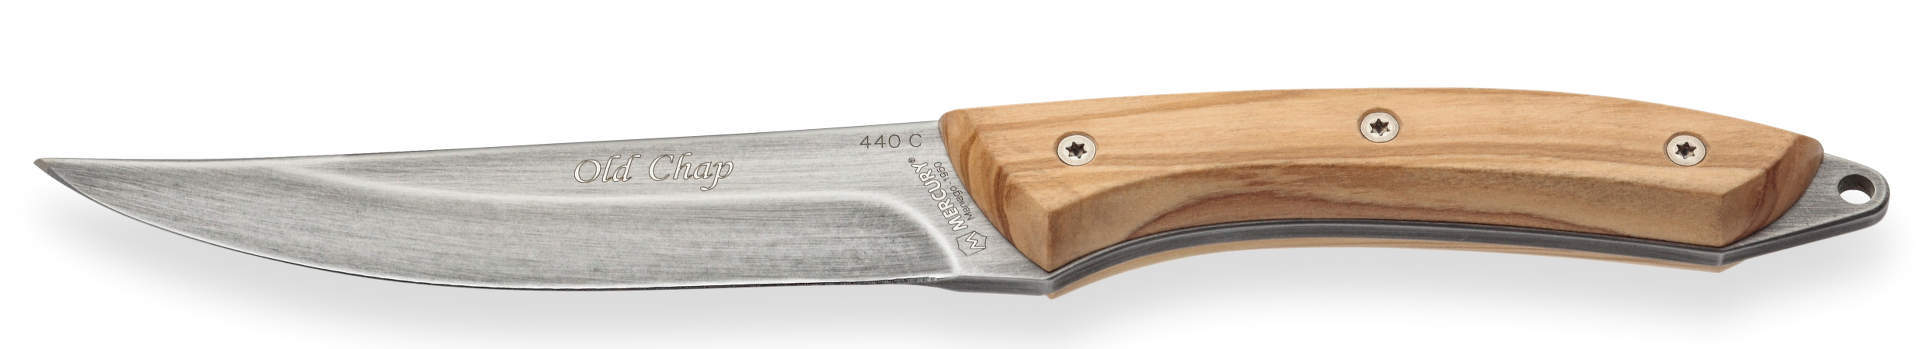 Нож с фиксированным клинком Mercury Old Chap, сталь 440C, оливковое дерево - фото 2